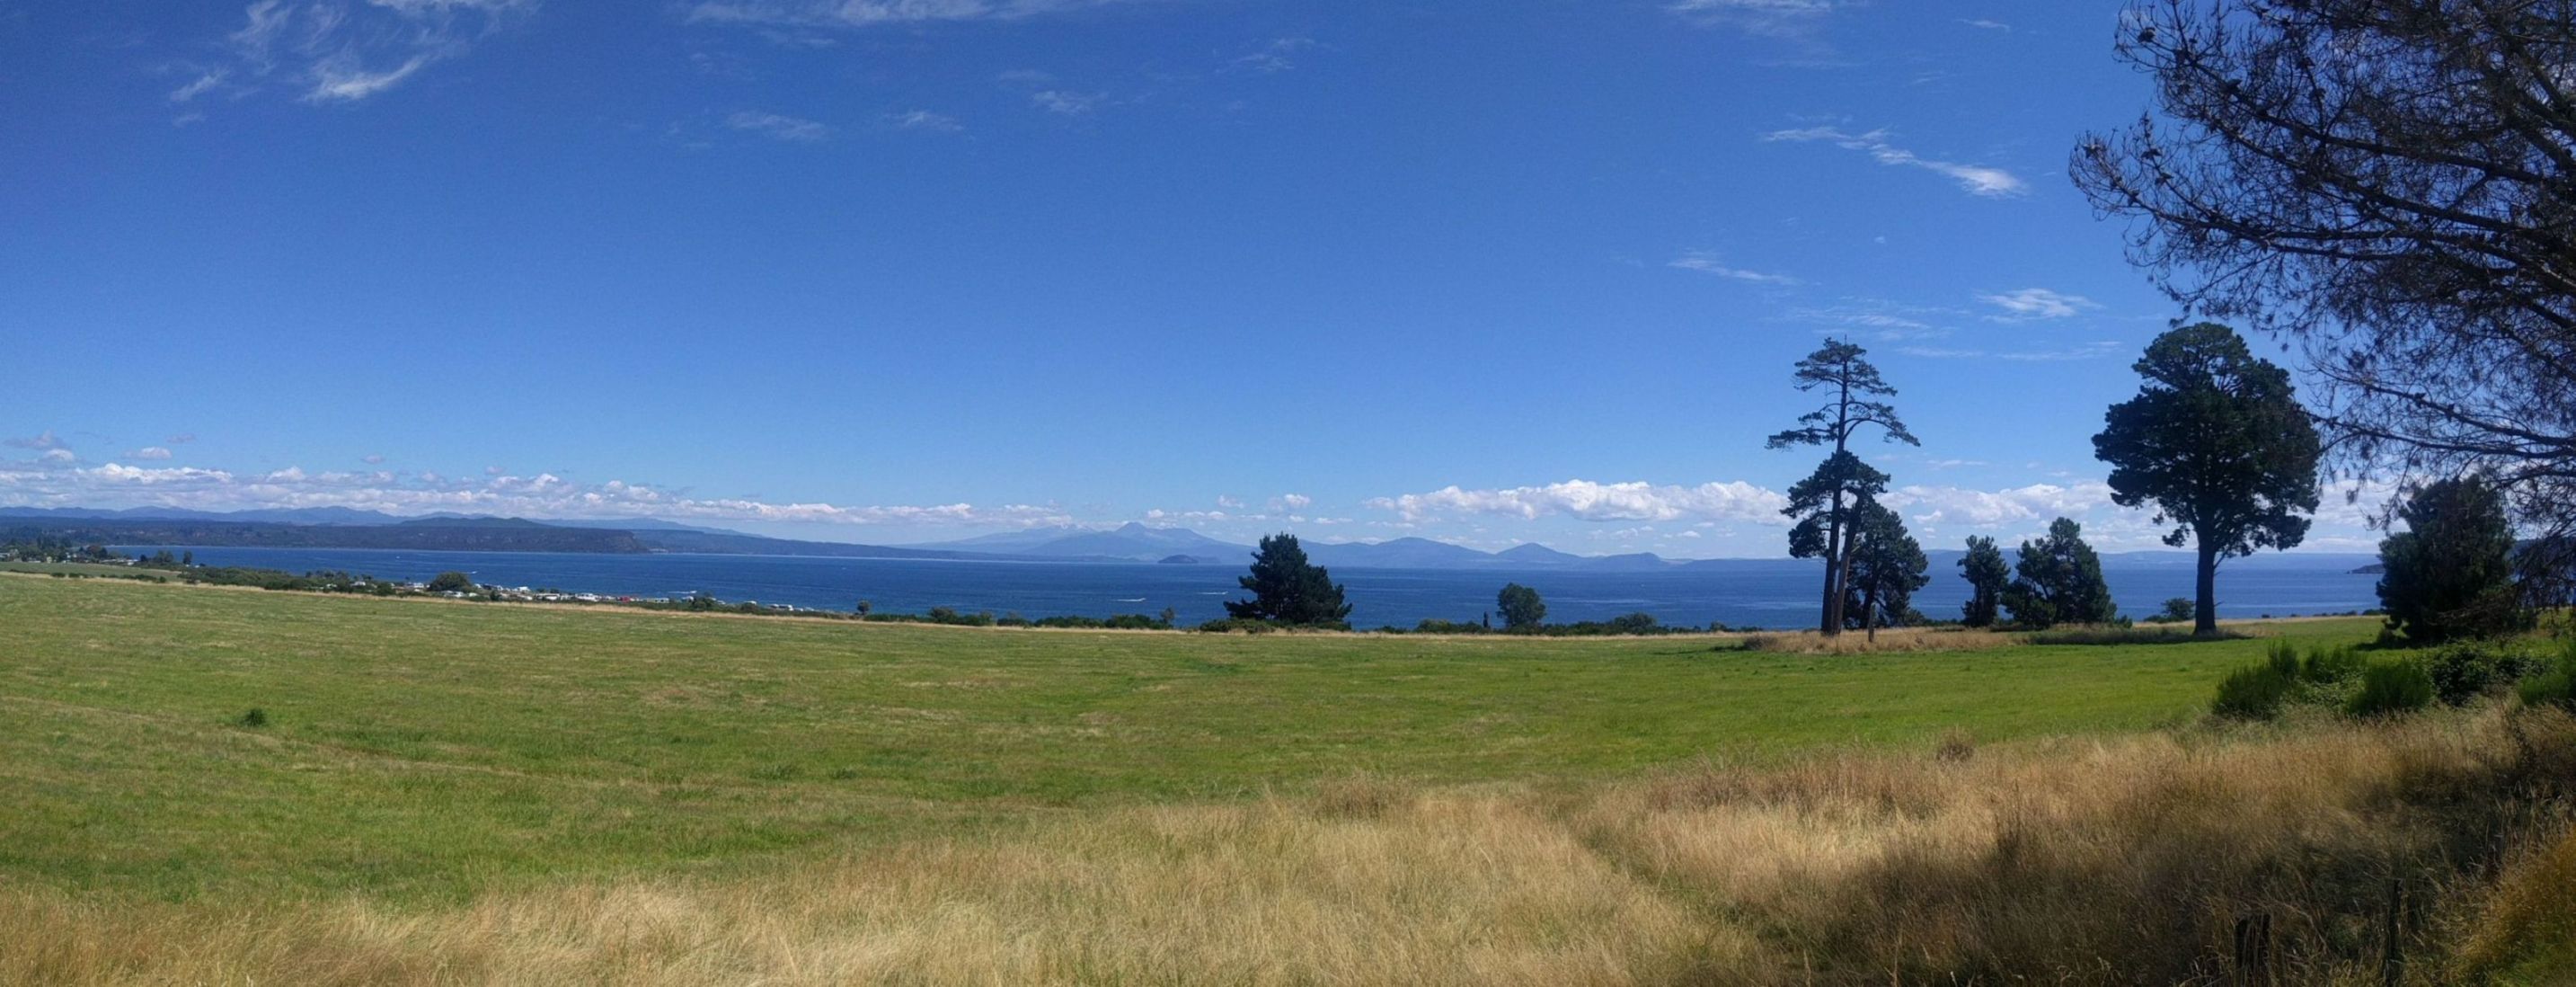 Výhľad pri Taupo na 3 vrchy Tongariro národný park zo severu